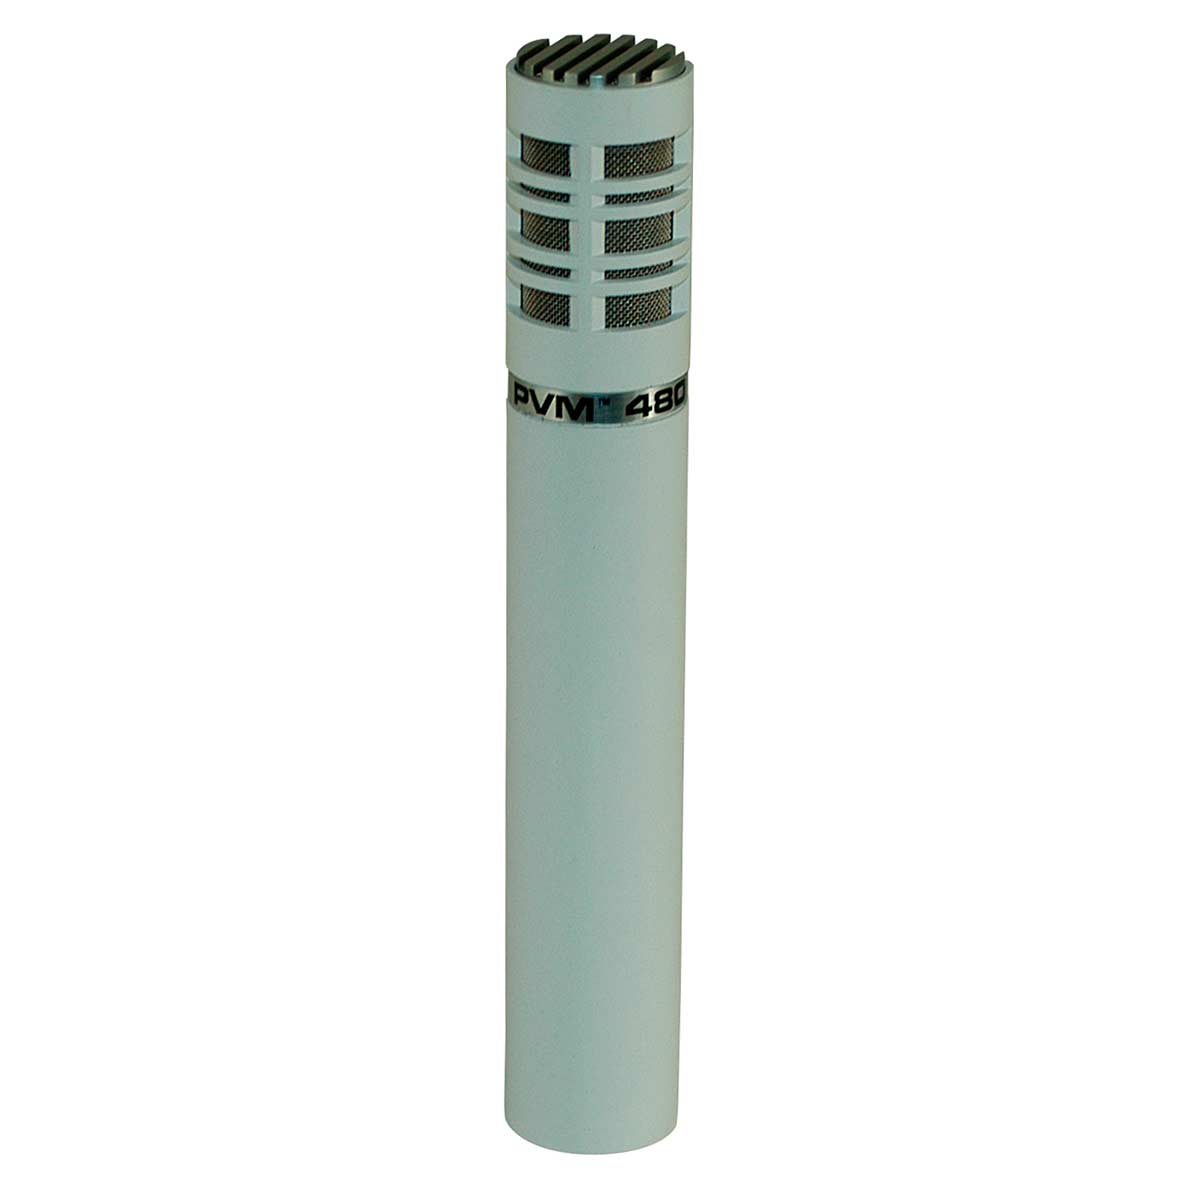 Micrófono condensador super-cardioide Peavey PVM 480